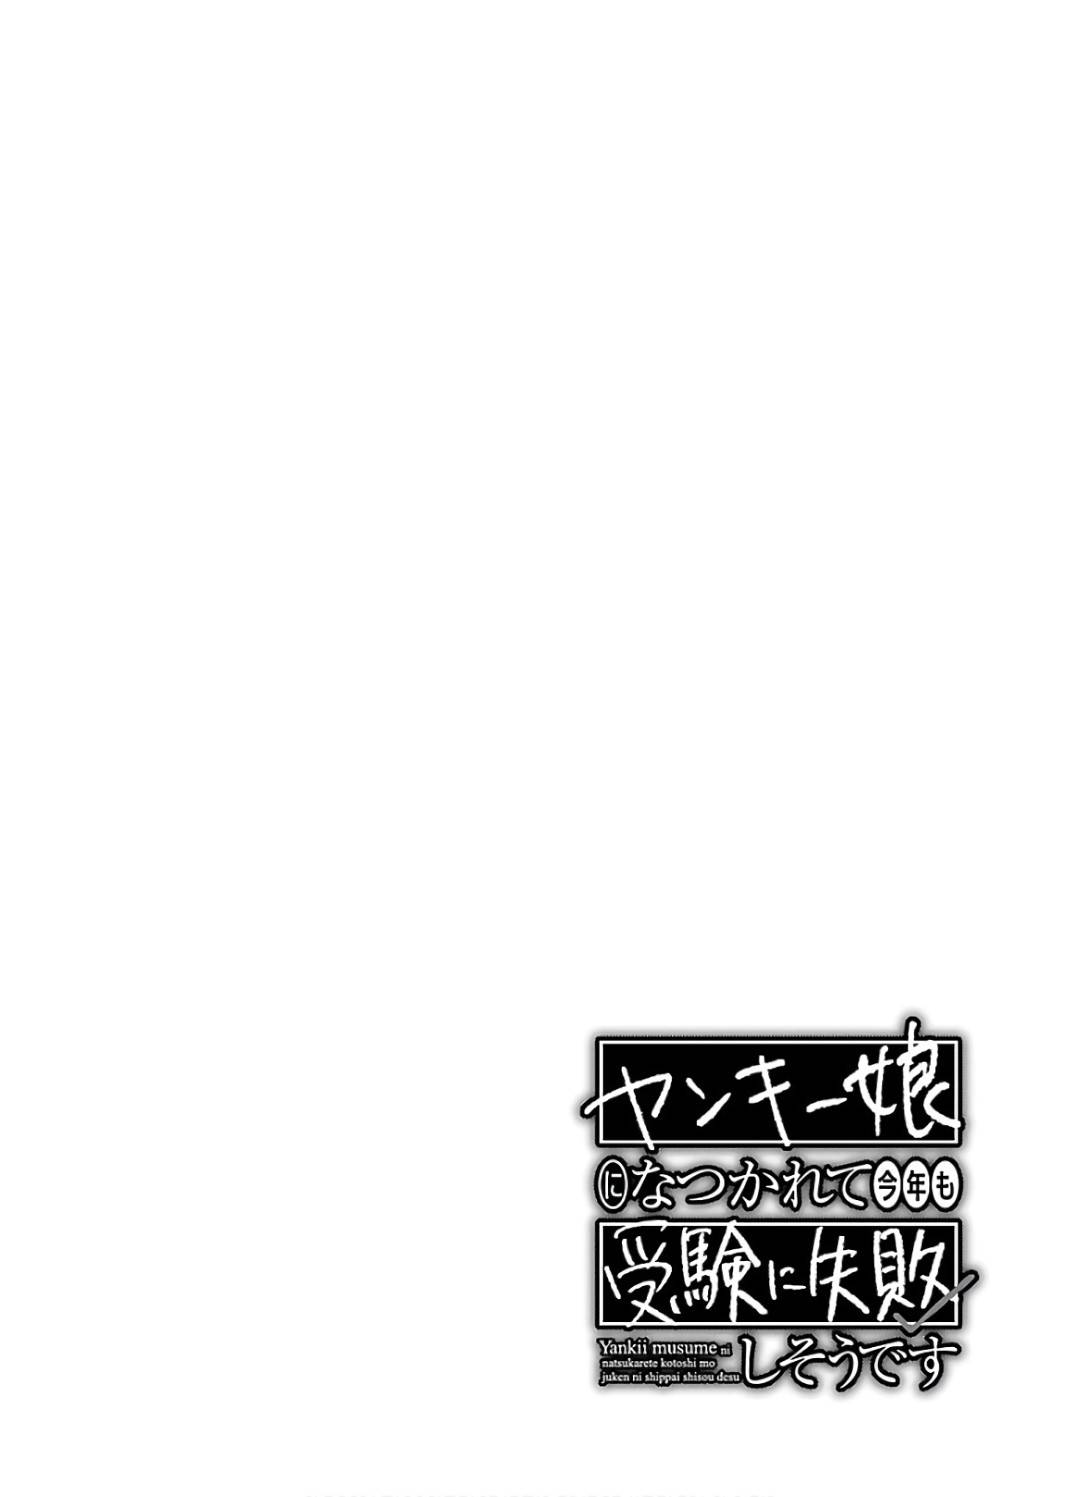 【エロ漫画】銭湯に来た遠藤は蓮城に遭遇すると、岩盤浴に行く事になりマッサージする。蓮城は際どい場所を揉まれると喘ぎながらトロ顔を晒す【ジェームスほたて】